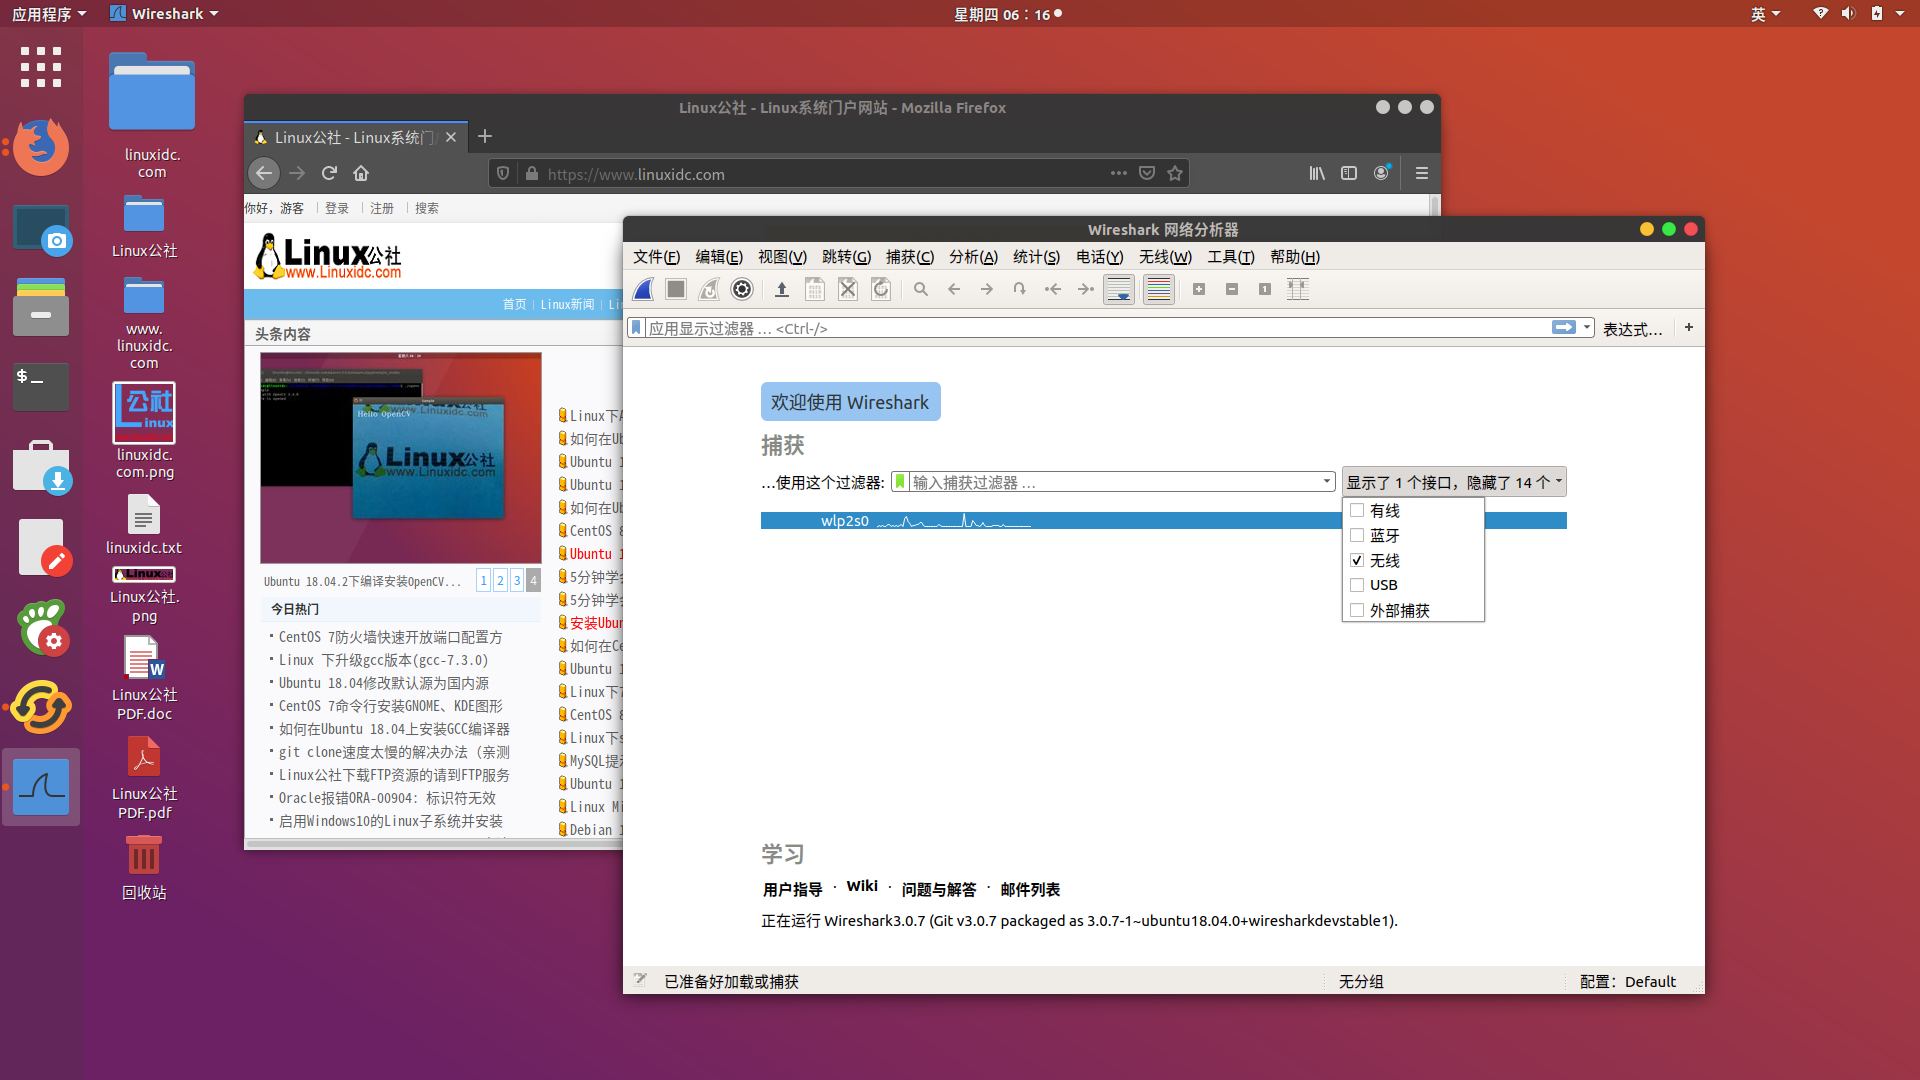 在Ubuntu 18.04 Linux上安装和使用Wireshark